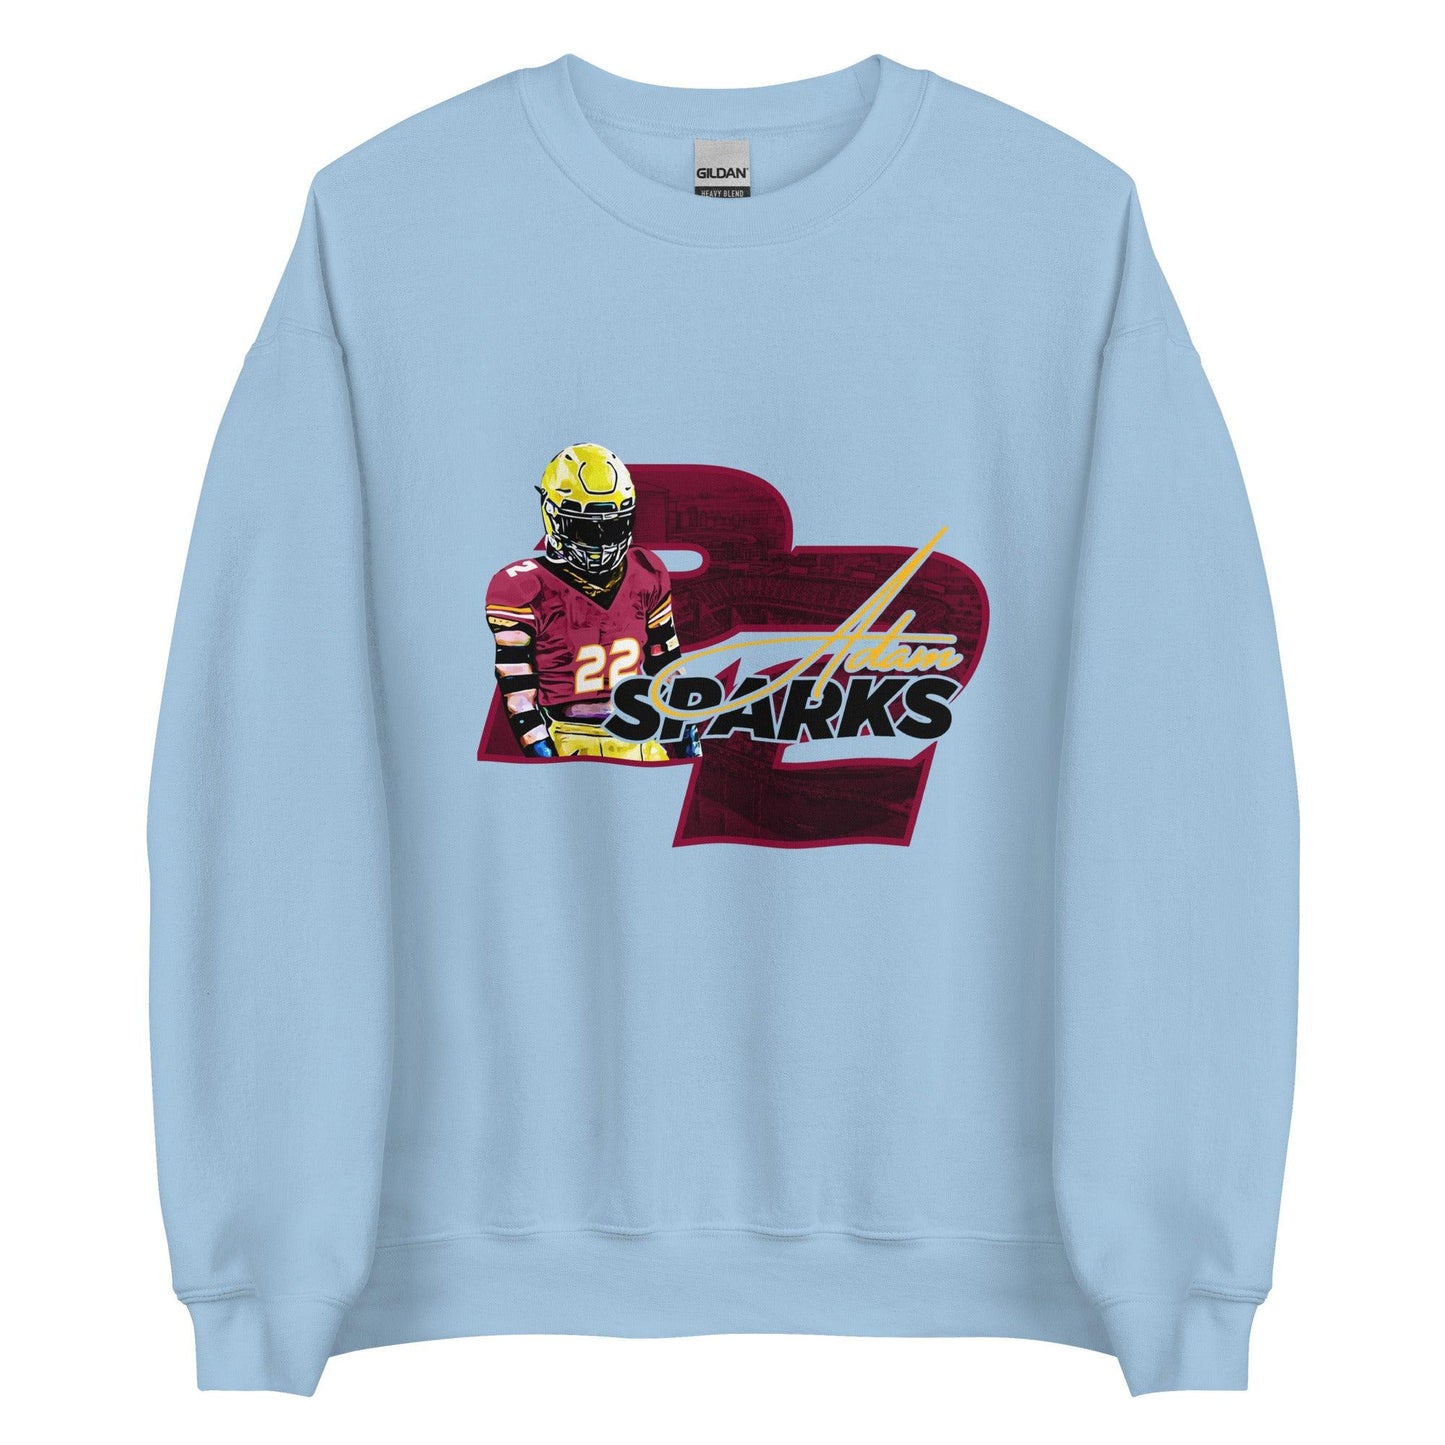 Adam Sparks "Inspire" Sweatshirt - Fan Arch